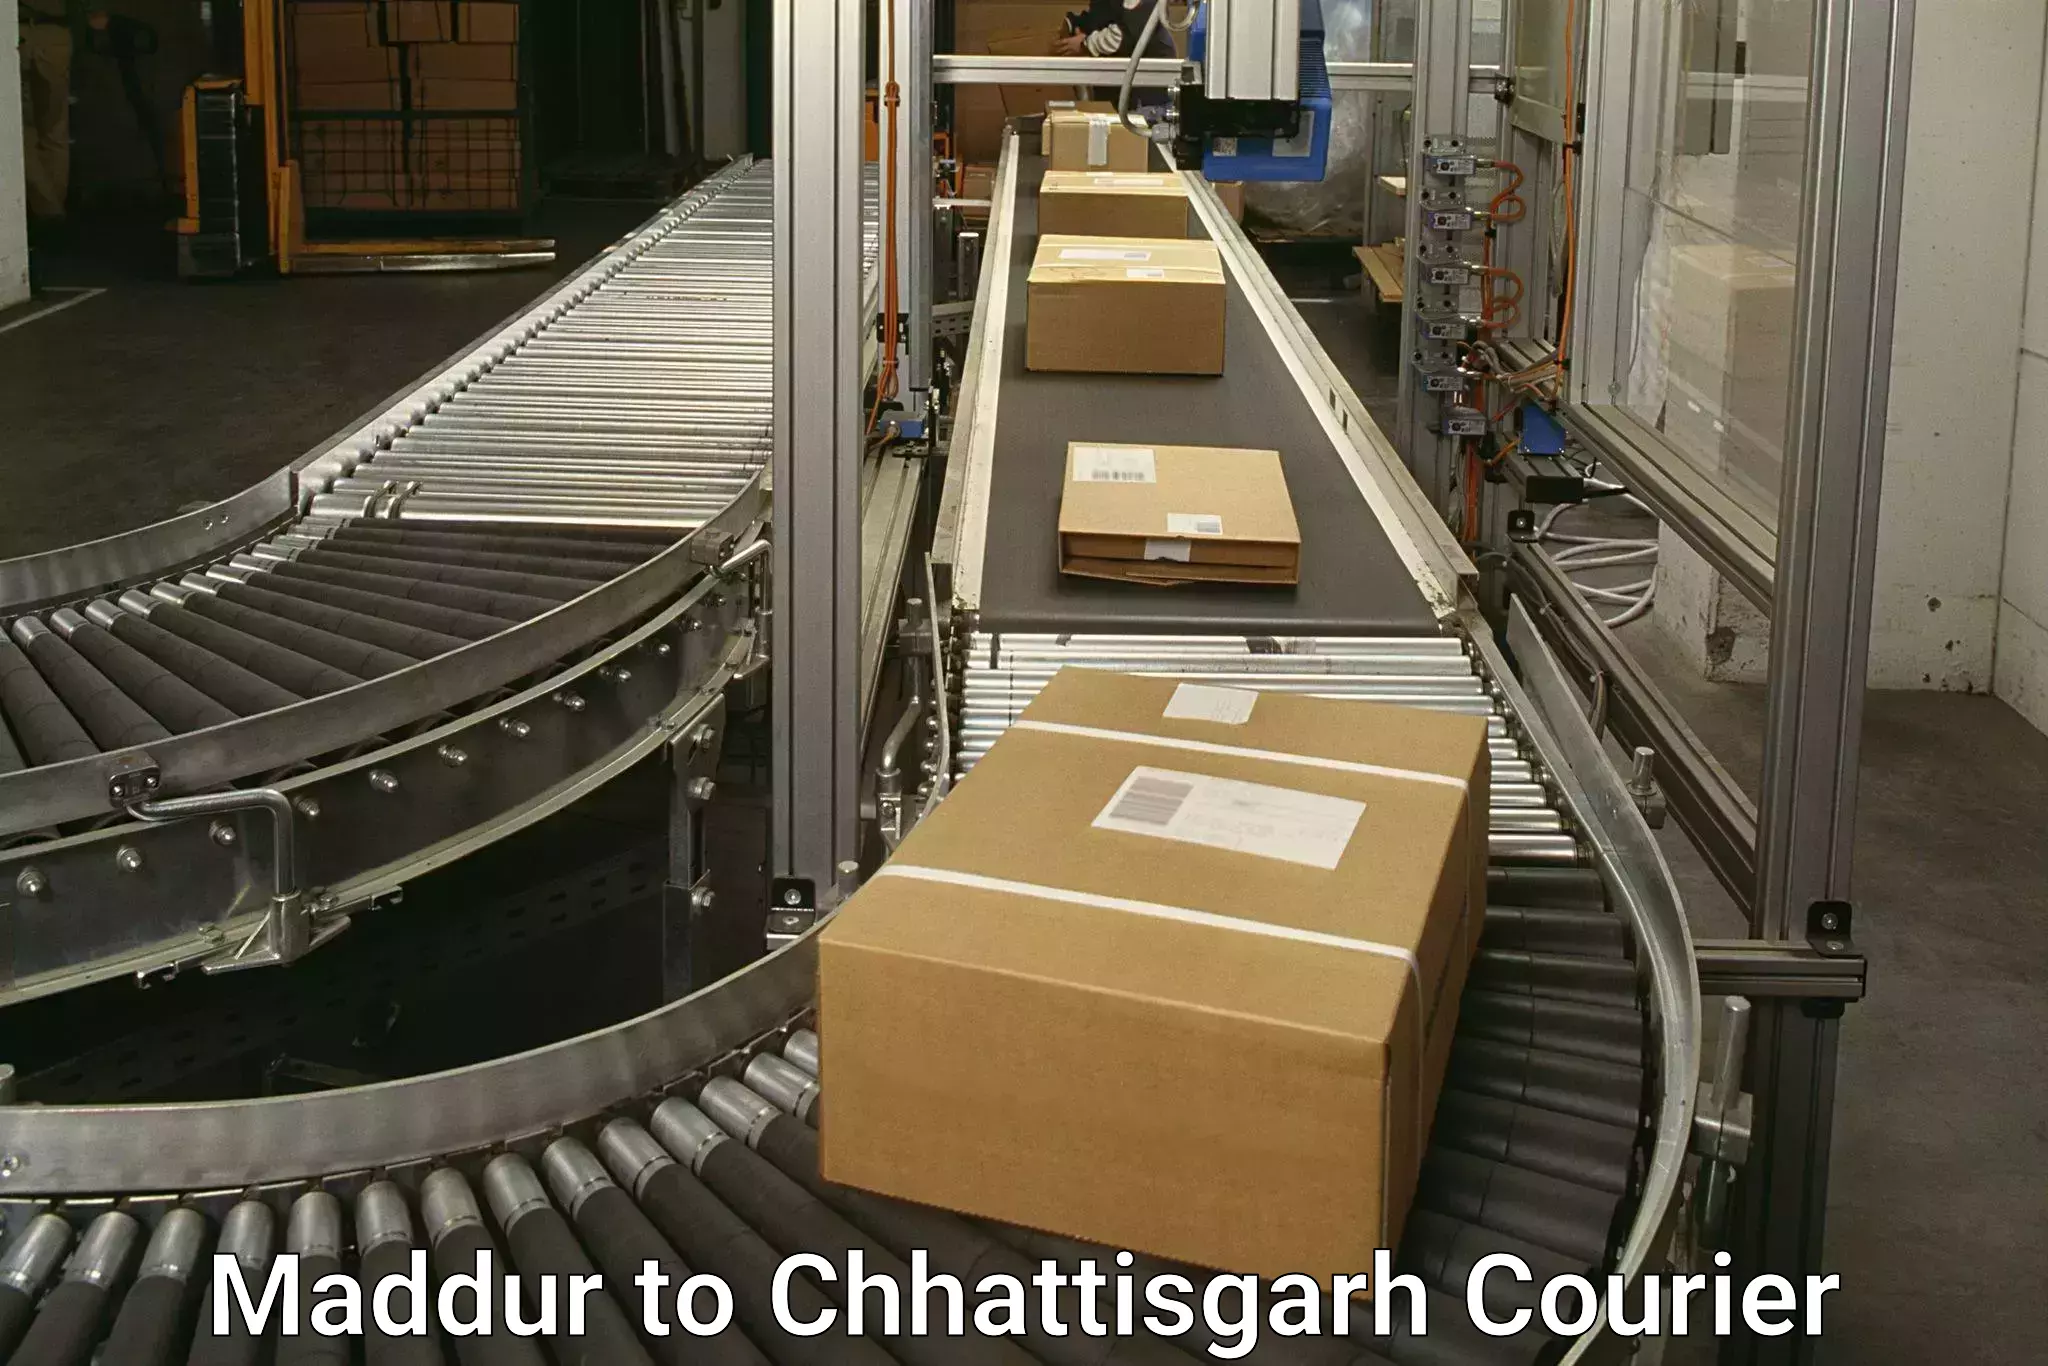 Cash on delivery service Maddur to Korea Chhattisgarh